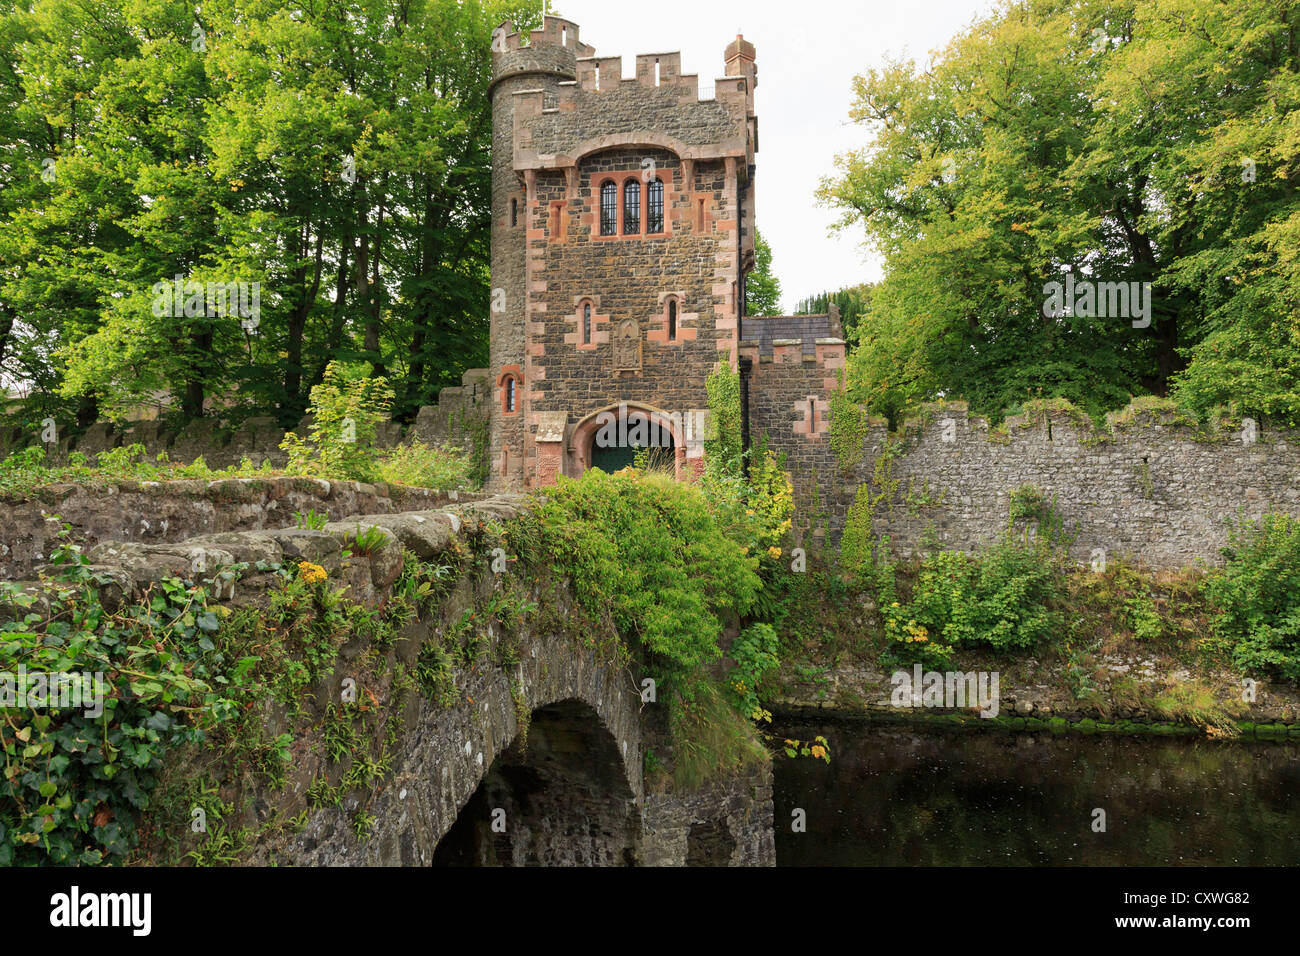 Brücke über Glenarm Fluss zum Barbican Turm Tor Eingang Glenarm Schloss in Glenarm, County Antrim, Nordirland, Vereinigtes Königreich, Großbritannien Stockfoto